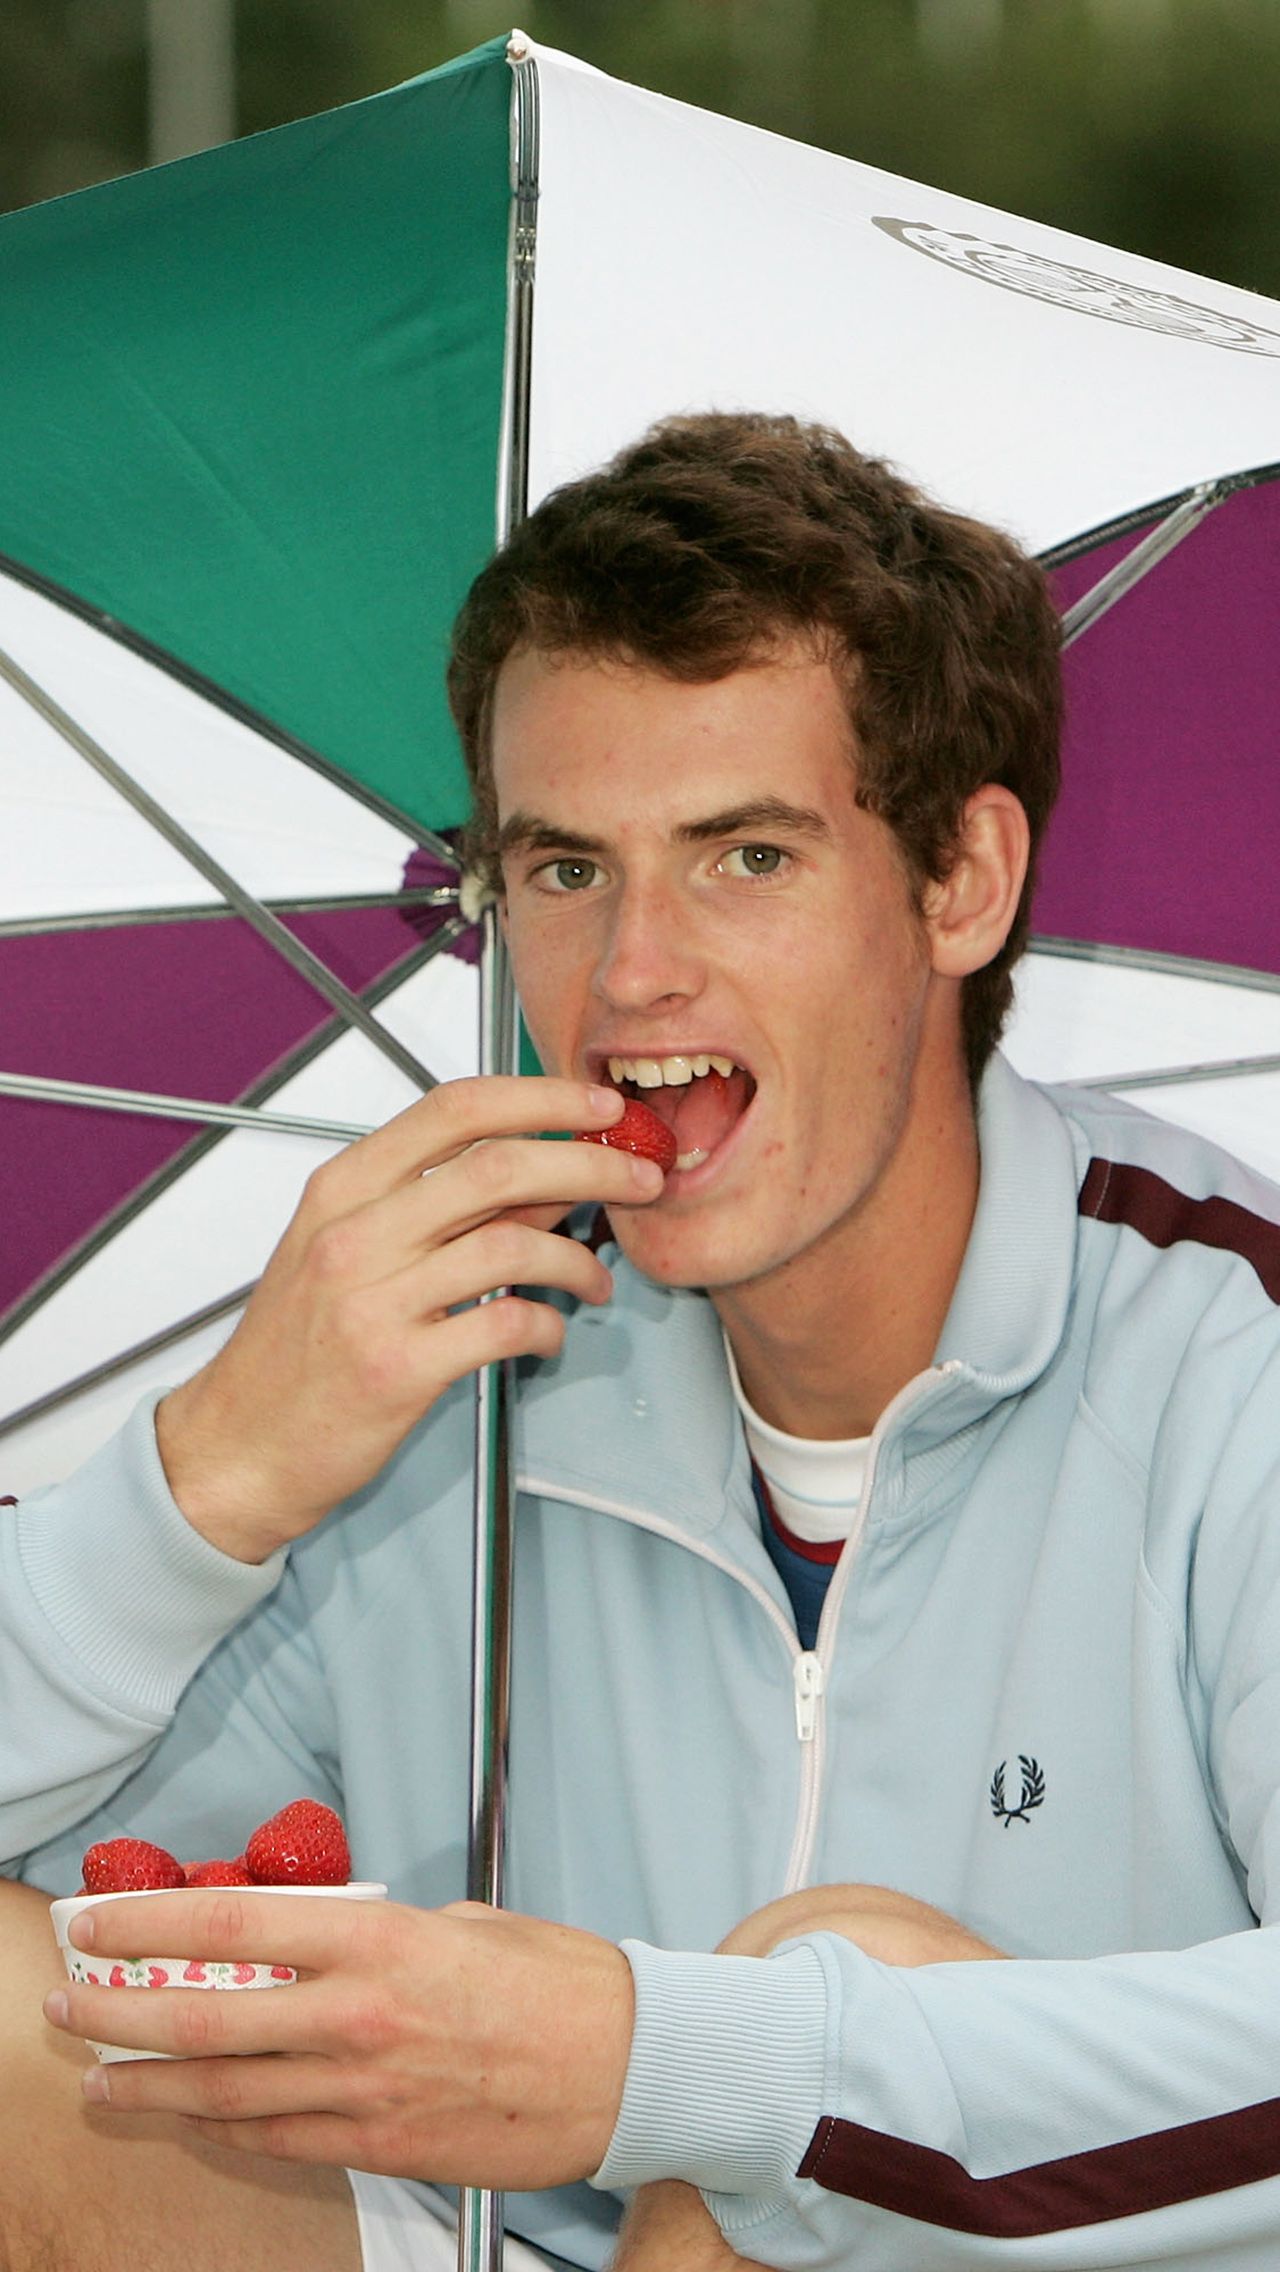 Как теннисисты едят клубнику?